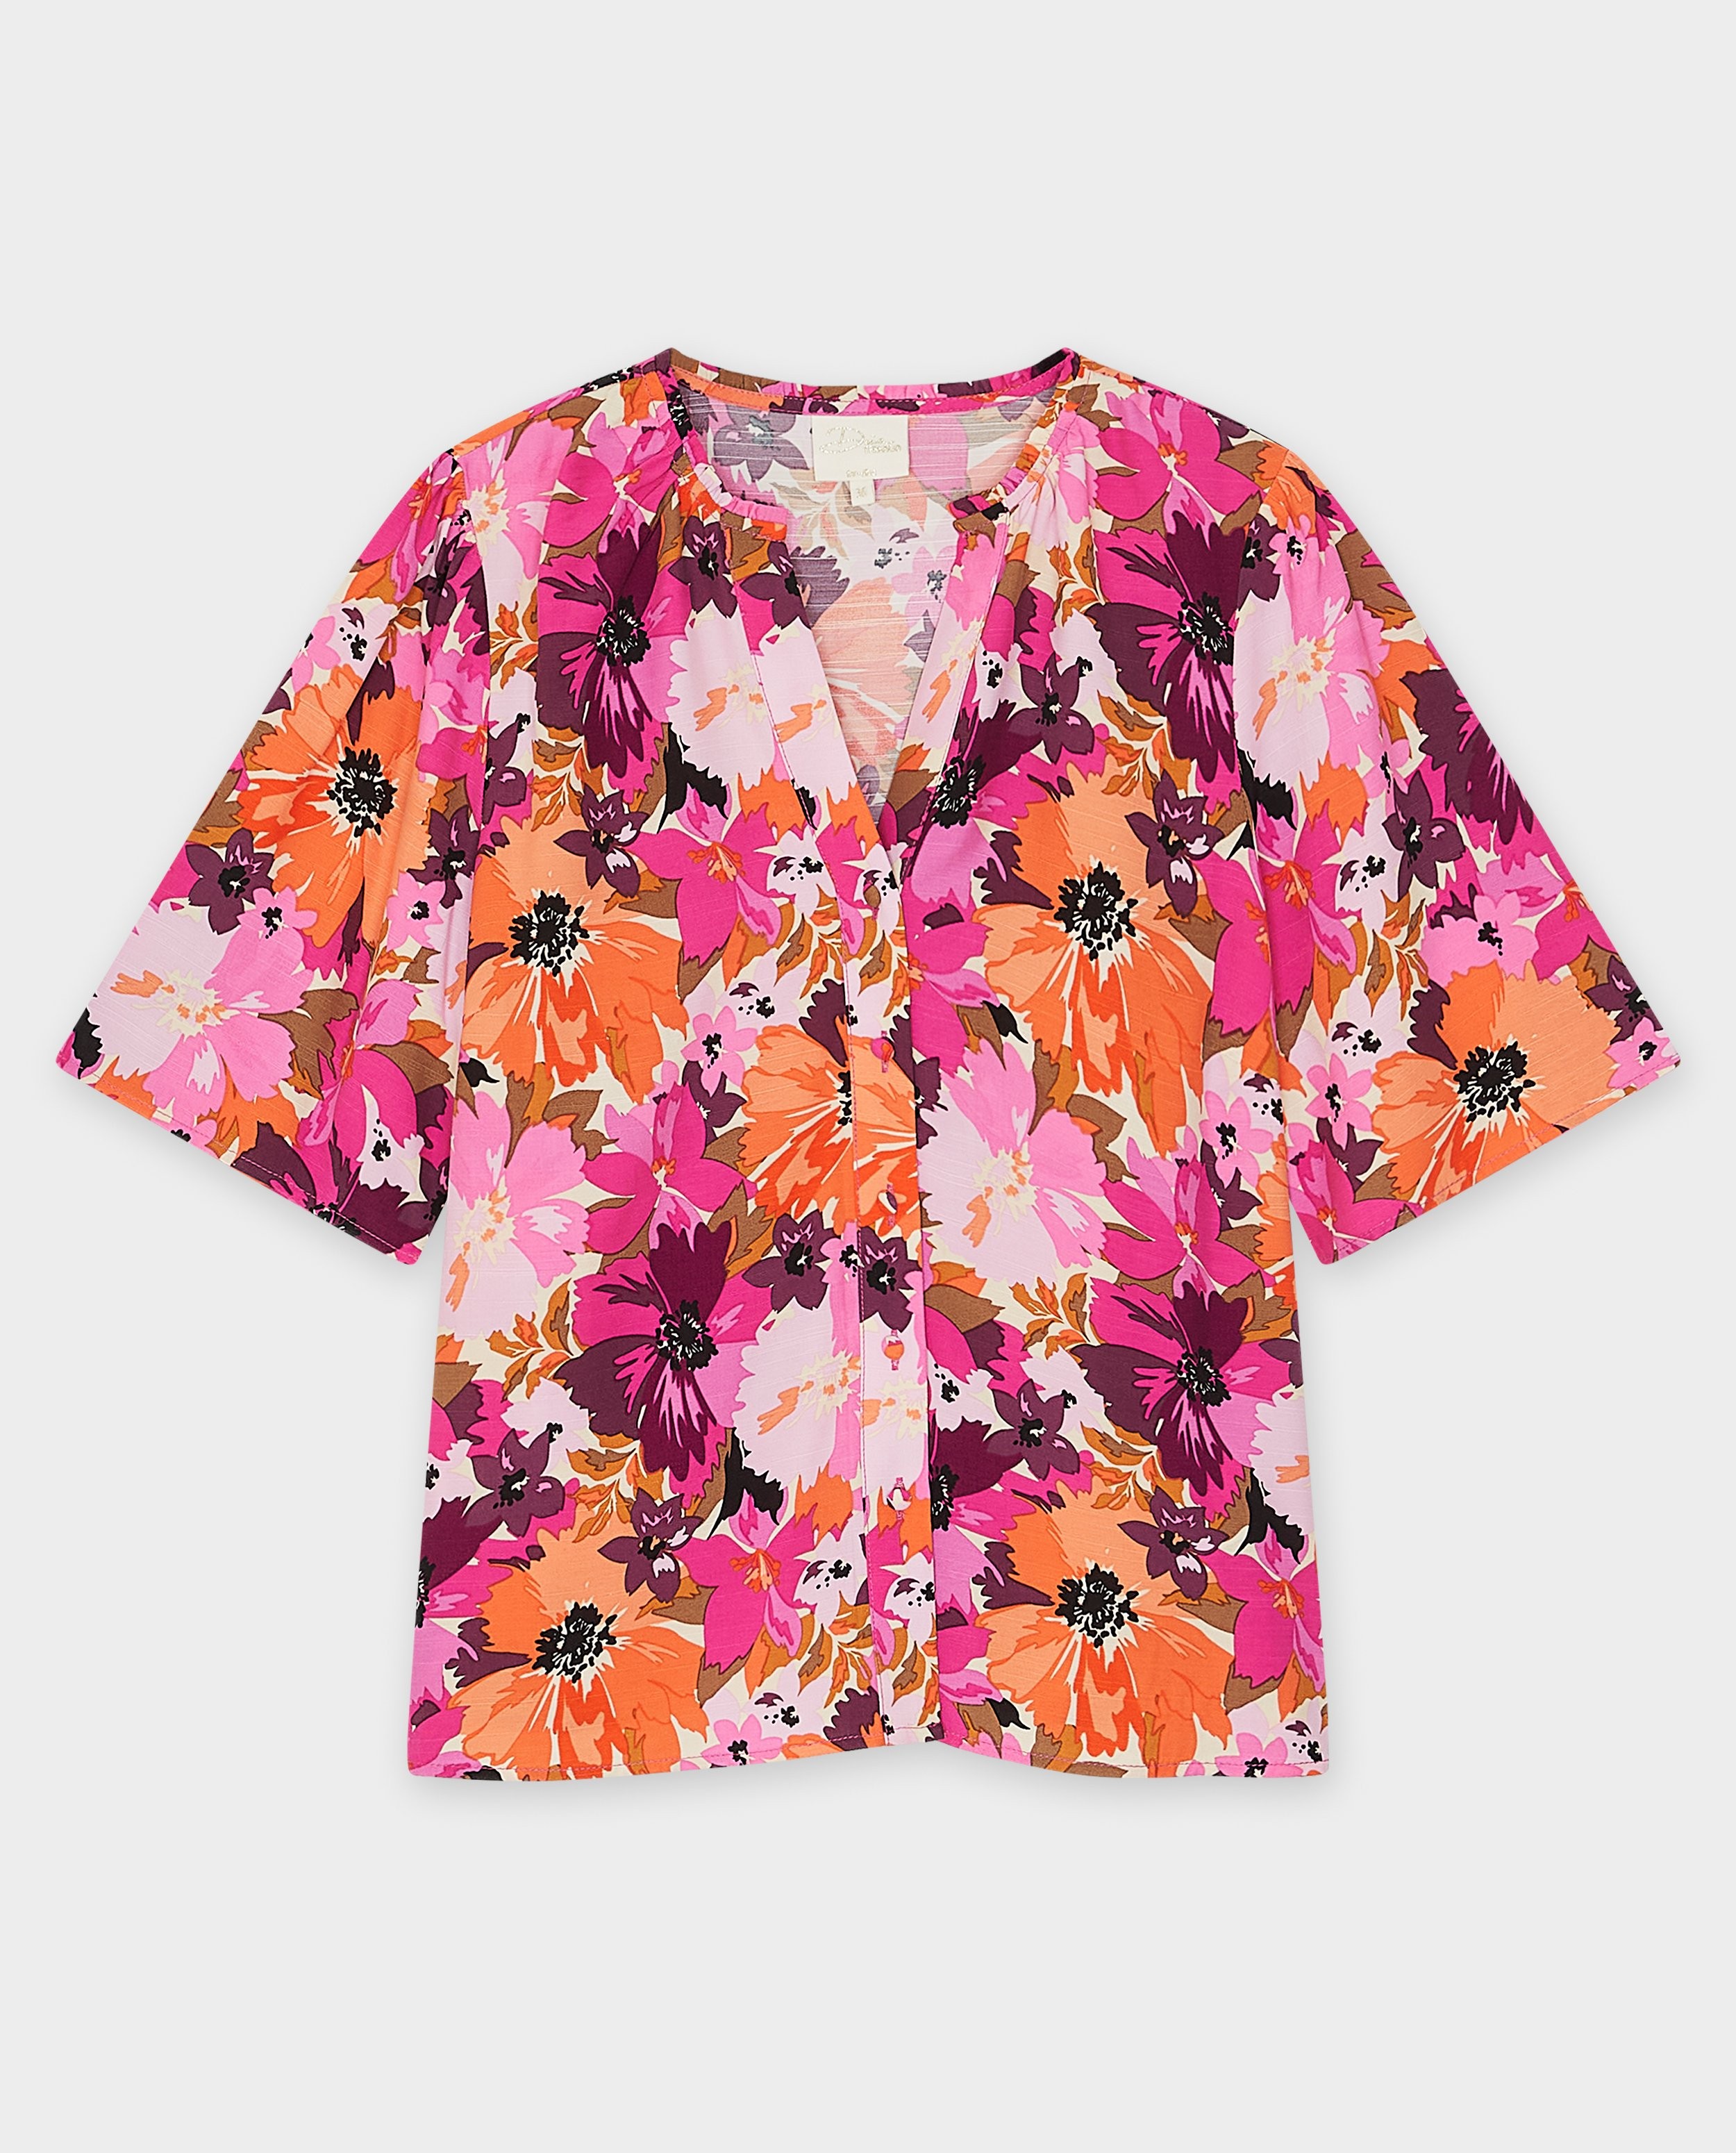 Hemden - Blouse met bloemenprint